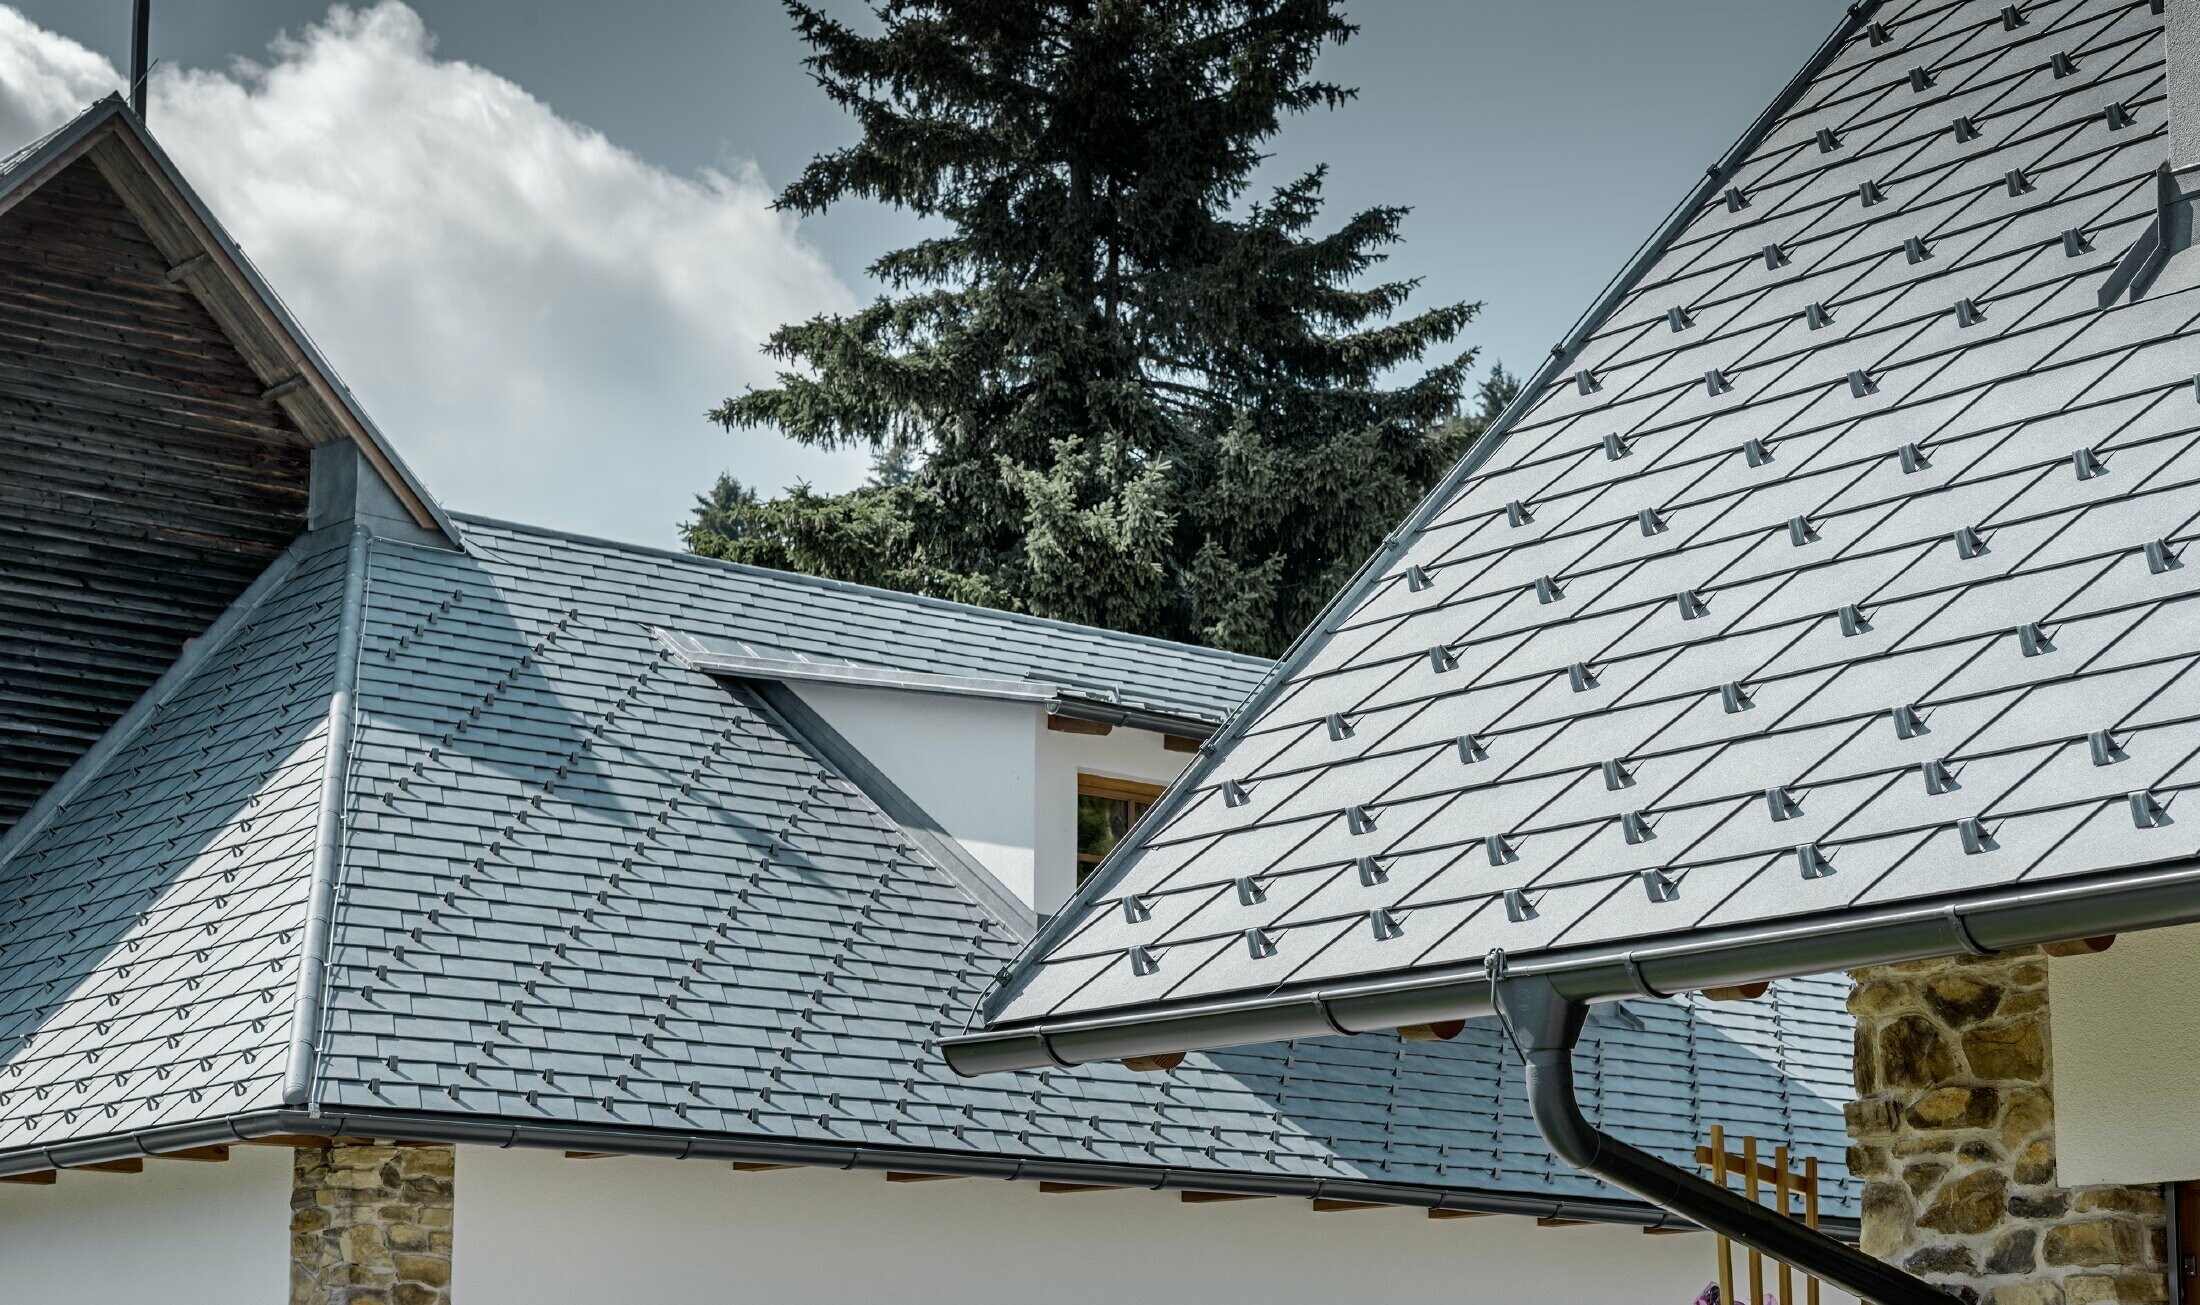 Detalj av aluminiumbeläggningen från PREFA - Takshingel i stengrått med takrännor i antracitgrå aluminium från PREFA. I bakgrunden ser en takkupa med stående fals. Fasaden är vit med inbyggda stenkomponenter.